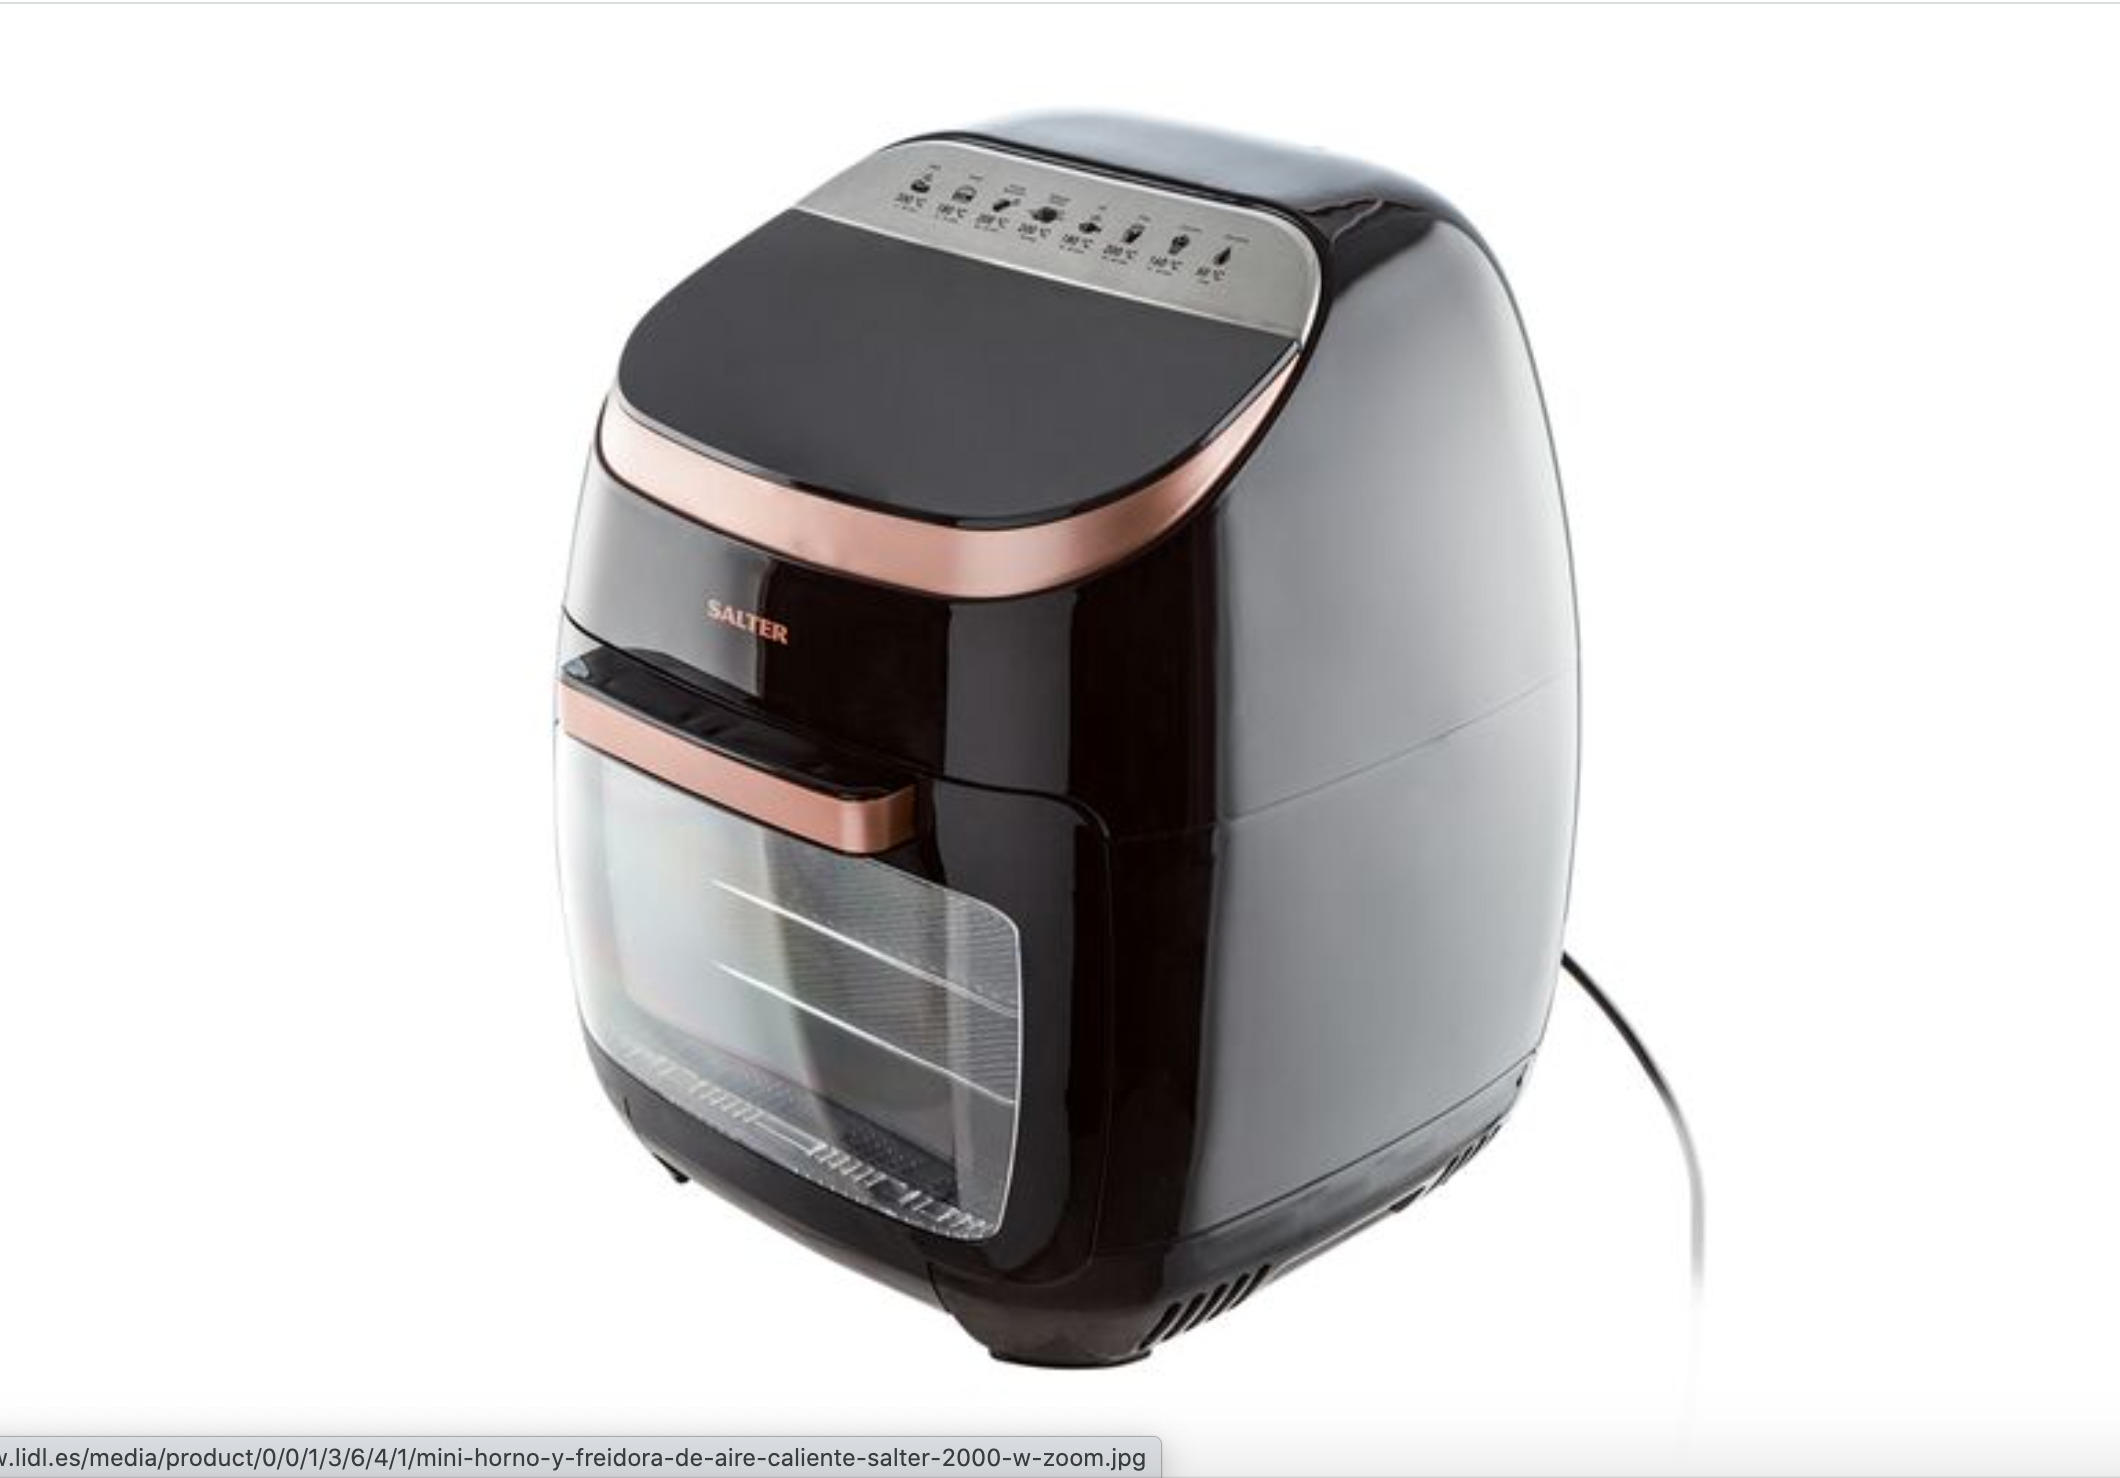 Ventilar Problema paquete La nueva oferta de Lidl: un horno portátil barato con freidora de aire  caliente - Economía Digital